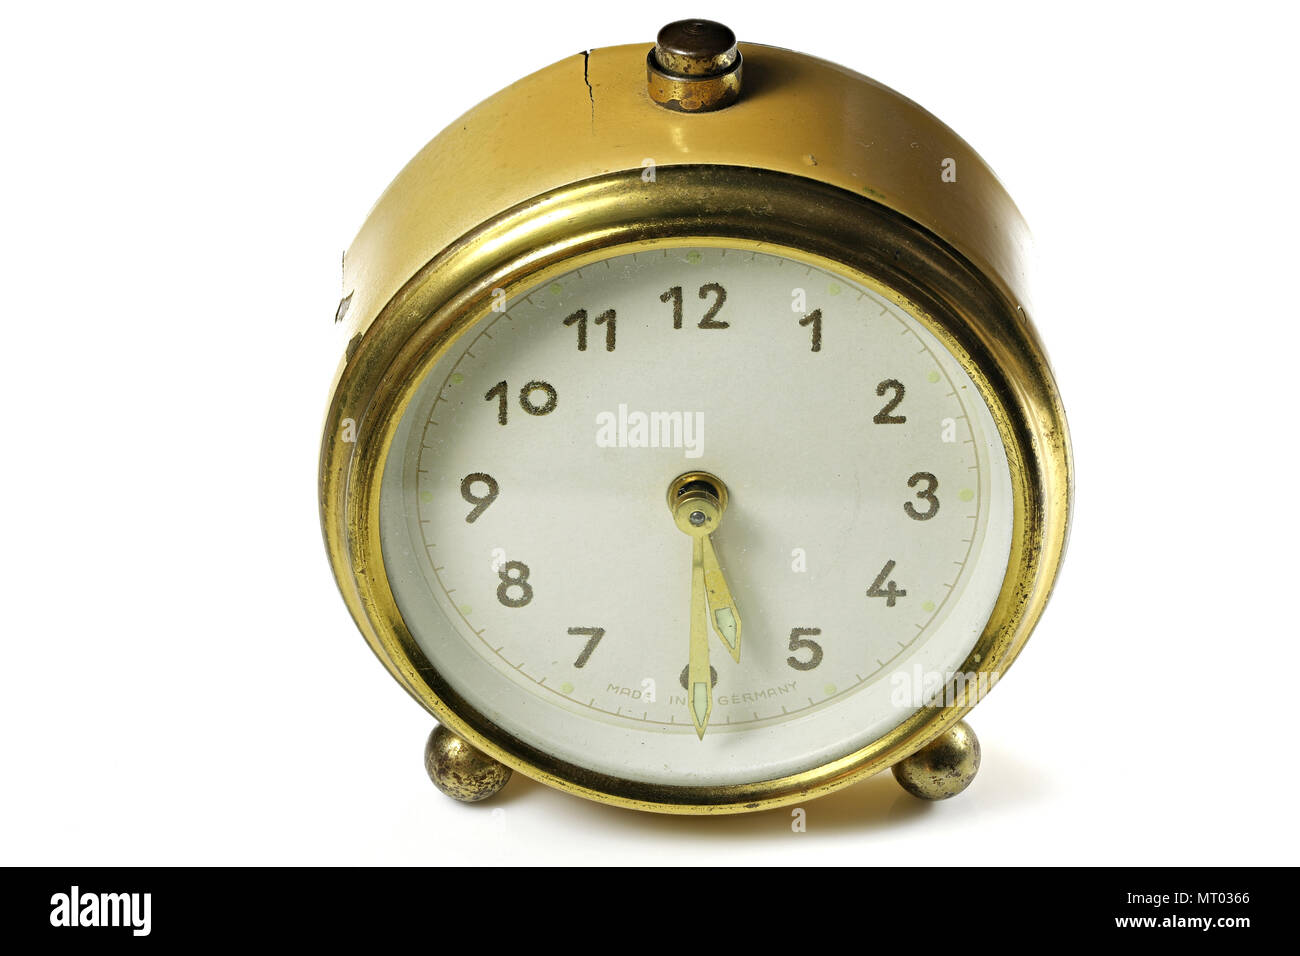 Vintage Alarm Clock Ringing At 5 30 Isolated On White Background Stock Photo Alamy